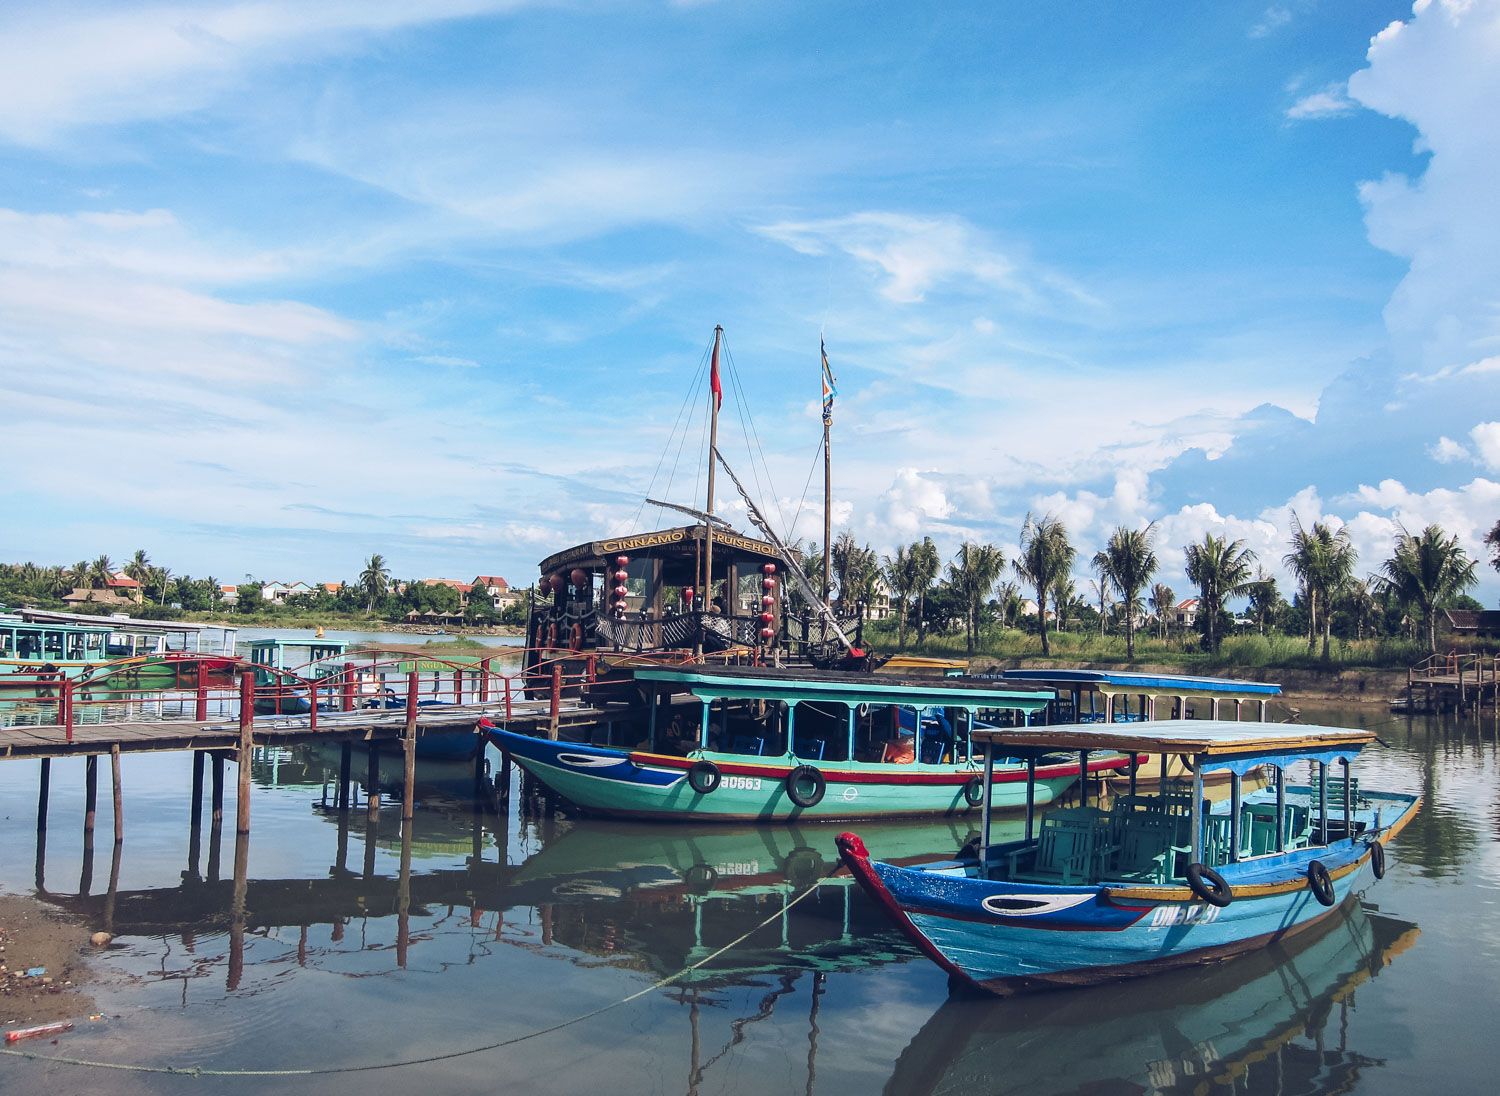 Boats in Vietnam